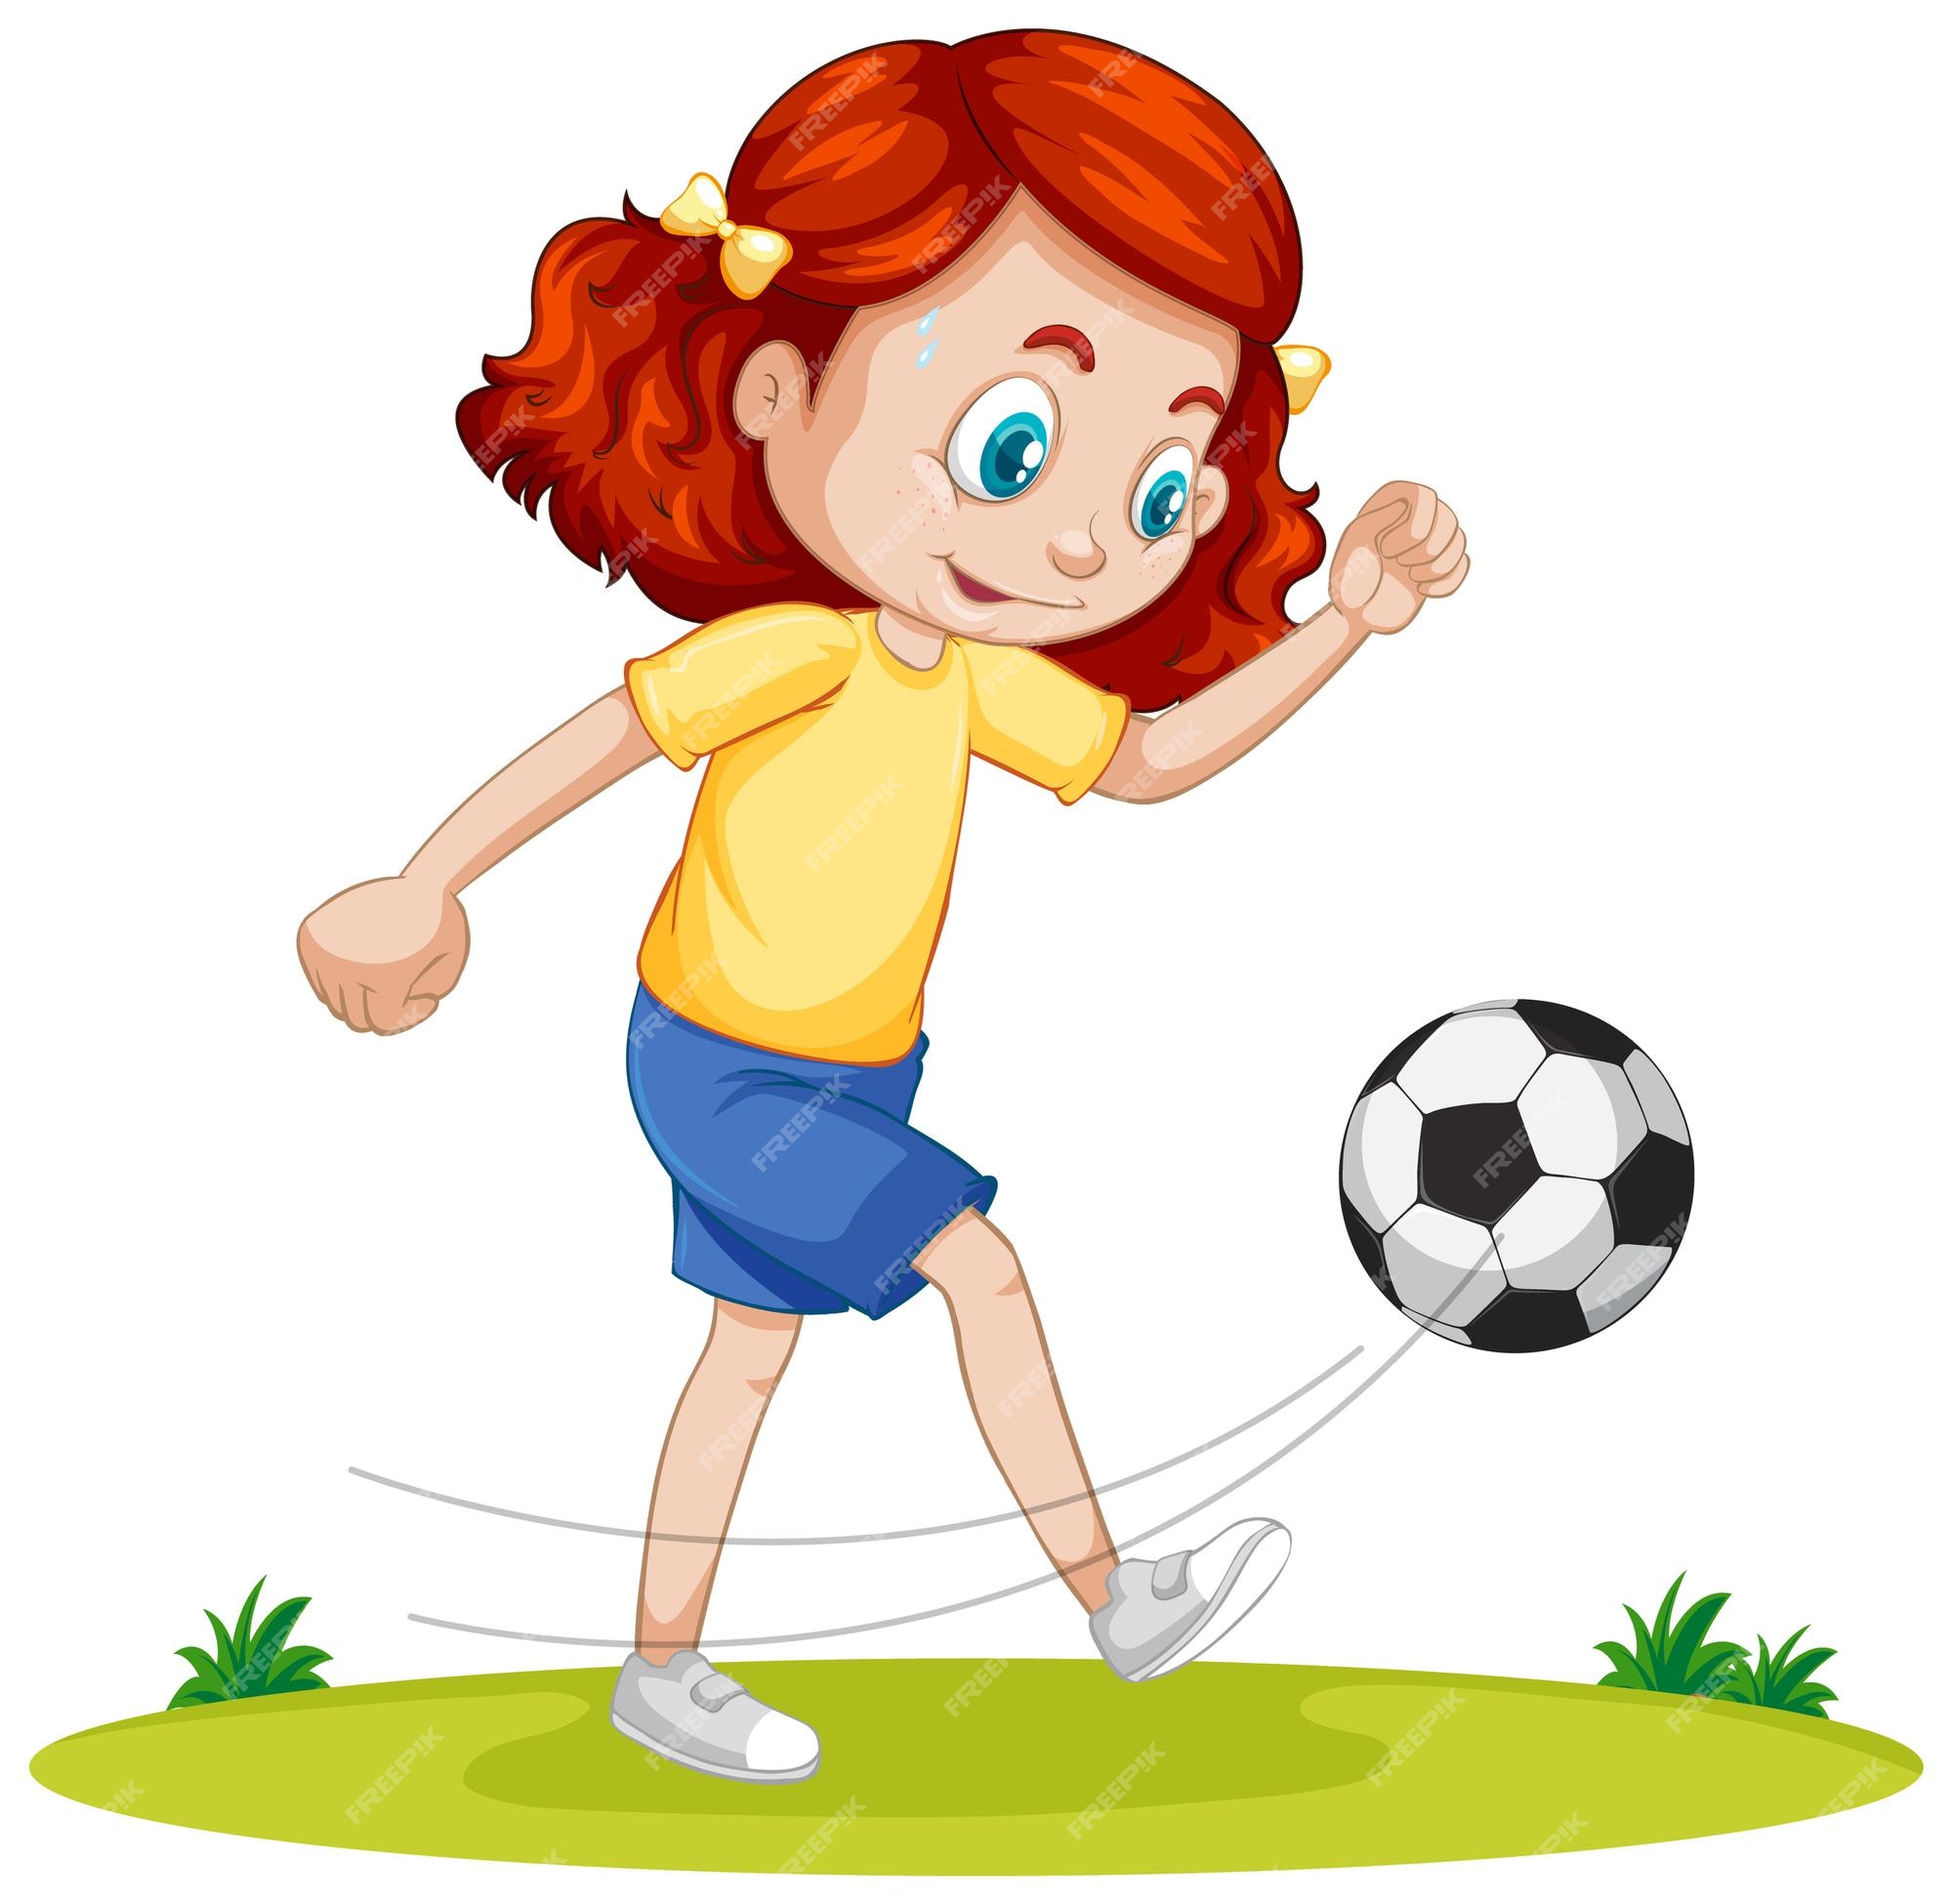 Top 187+ Imagenes de una niña jugando futbol 